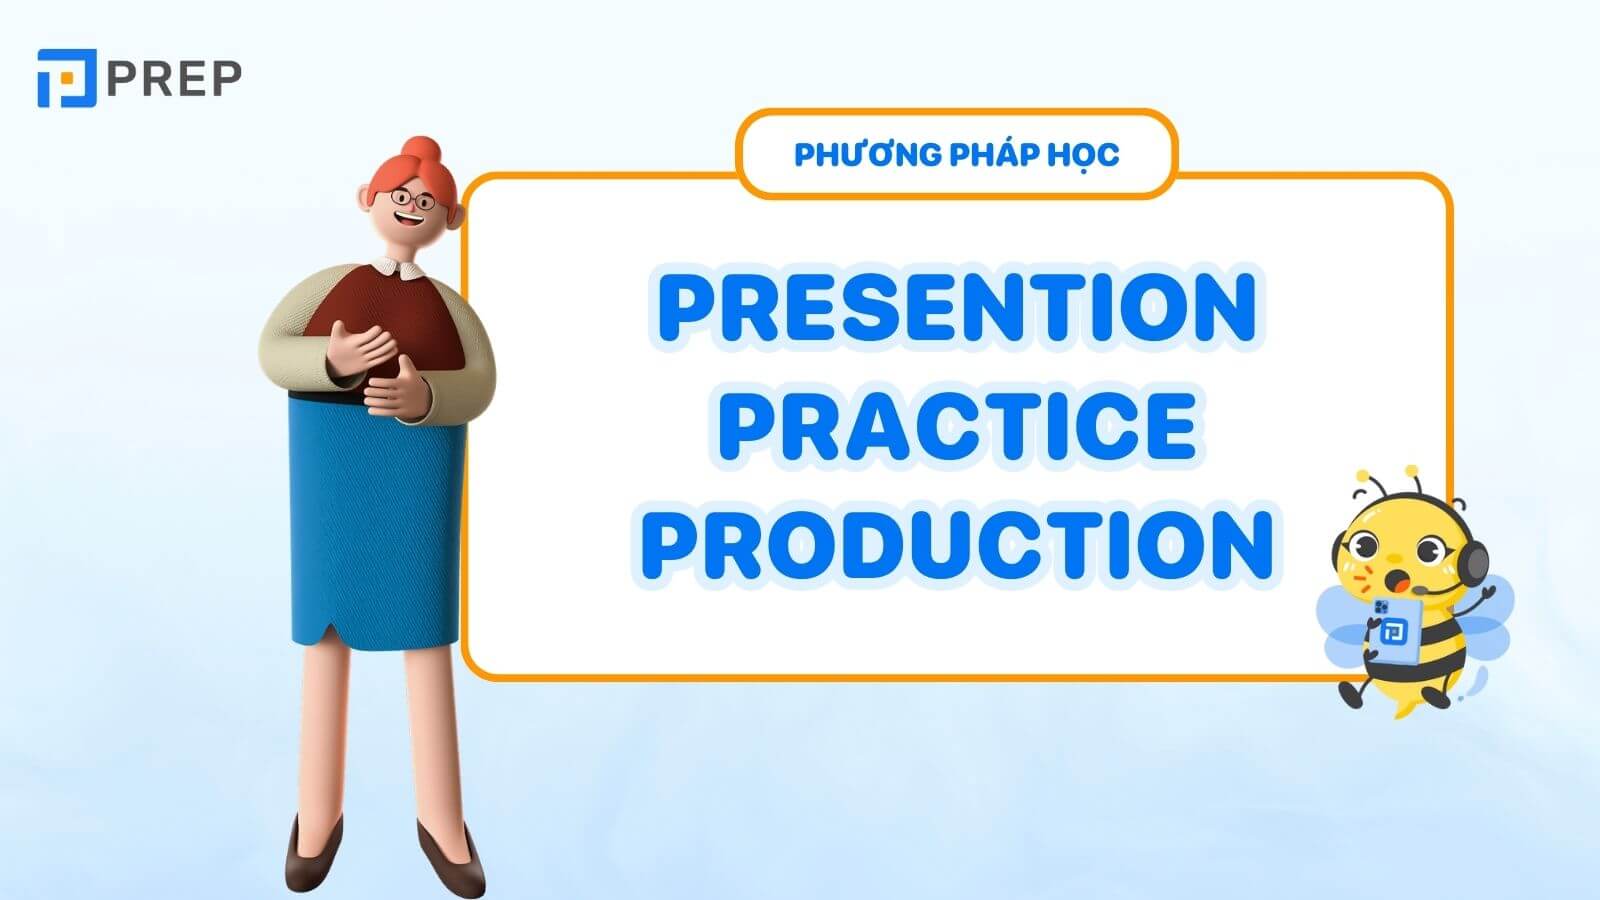 Phương pháp học tiếng Anh Presention practice production